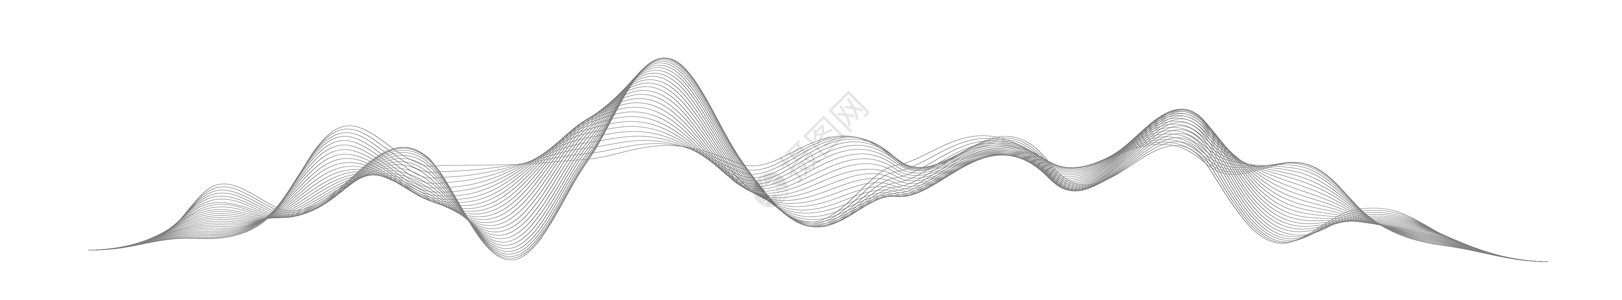 音频曲线在白色背景上的抽象风格的声波 抽象数字信号波线 矢量音乐语音振动歌曲波形数字频谱音频脉冲和波形频率均衡器图表韵律嗓音空闲仪表信号设计图片